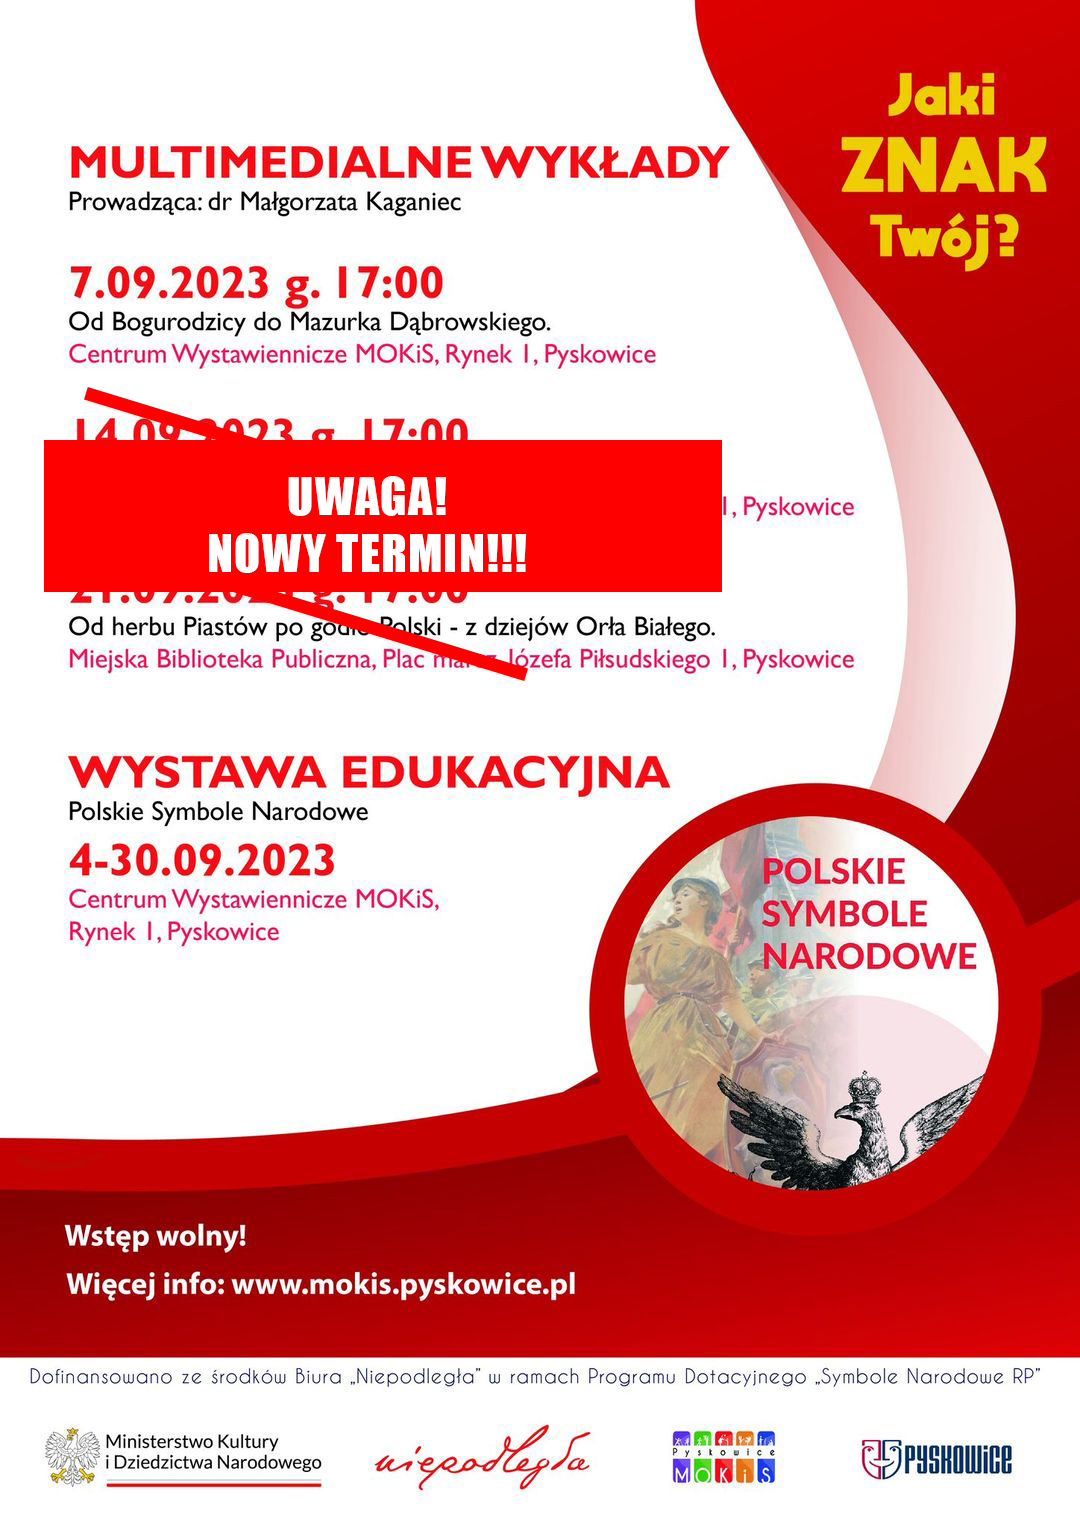 Plakat promujący wykłady. Czerwono- biała kolorystyka, na środku tekst z datami wykładów - Nowe terminy